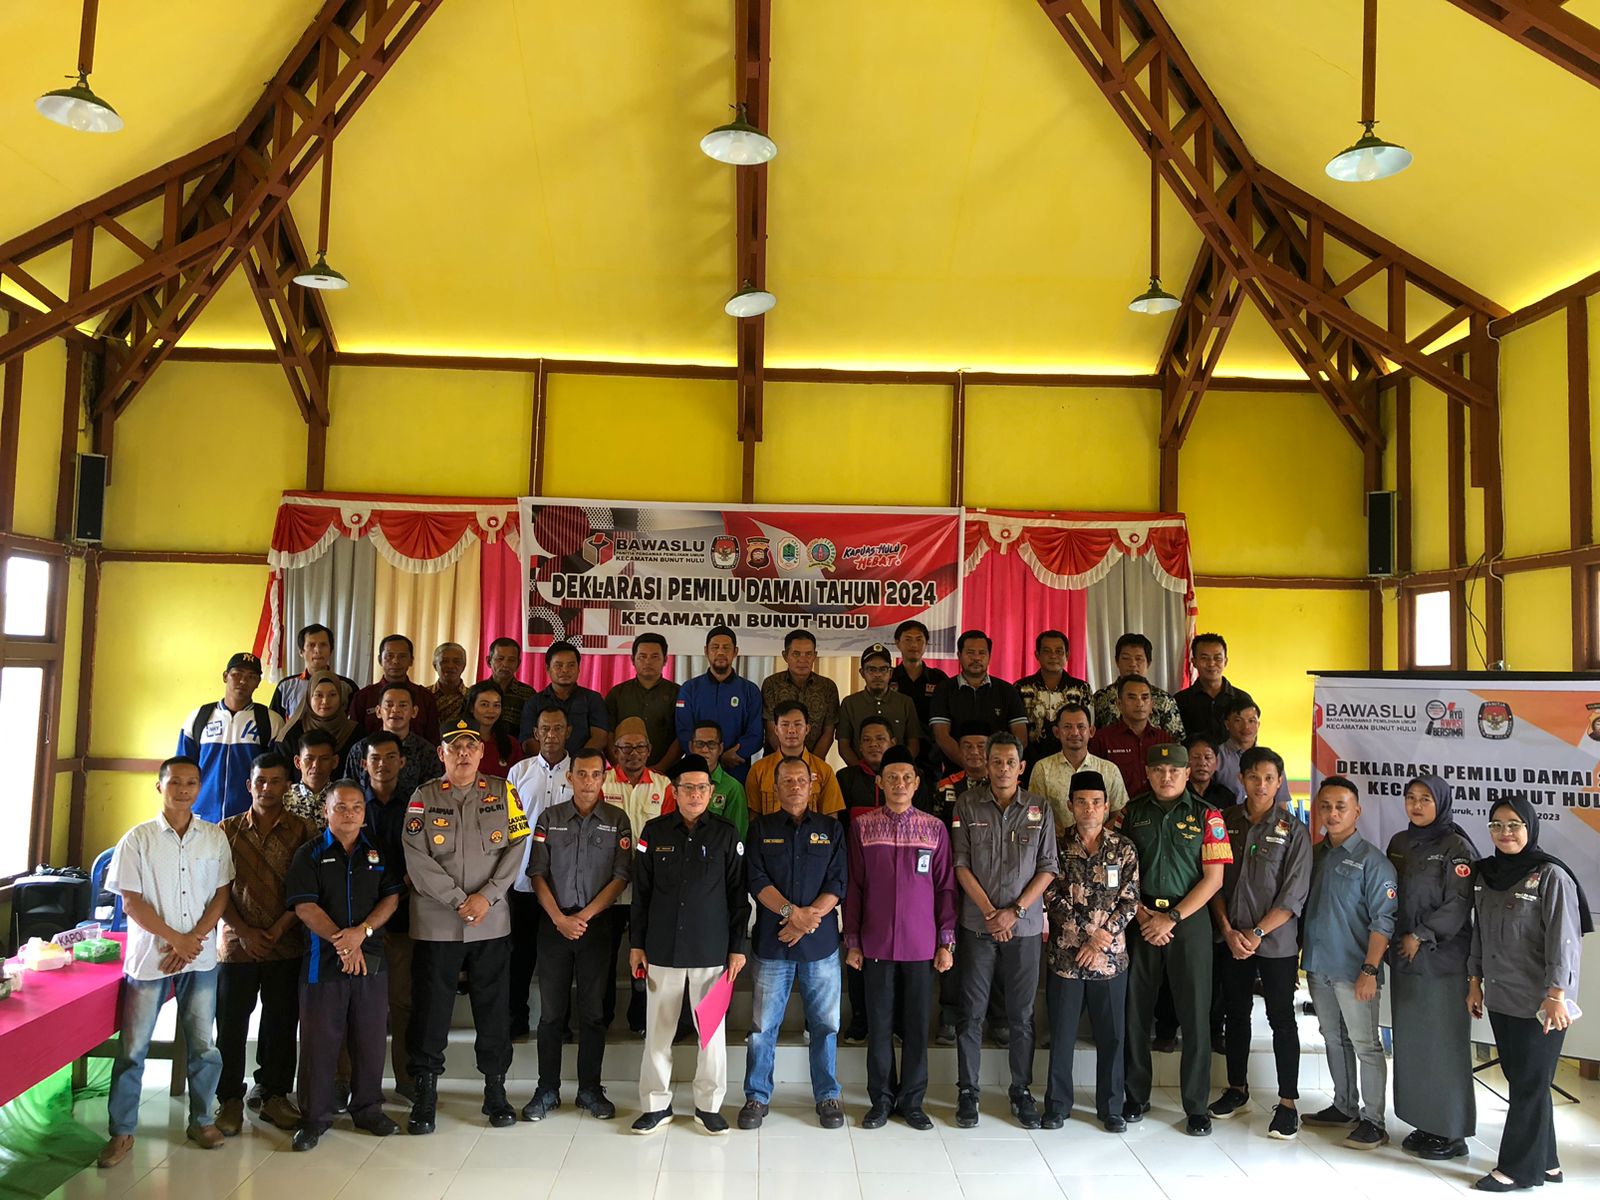 Foto bersama dalam acara Deklarasi Pemilu Damai di Kecamatan Bunut Hulu, Kabupaten Kapuas Hulu. (Ishaq/KalbarOnline.com)